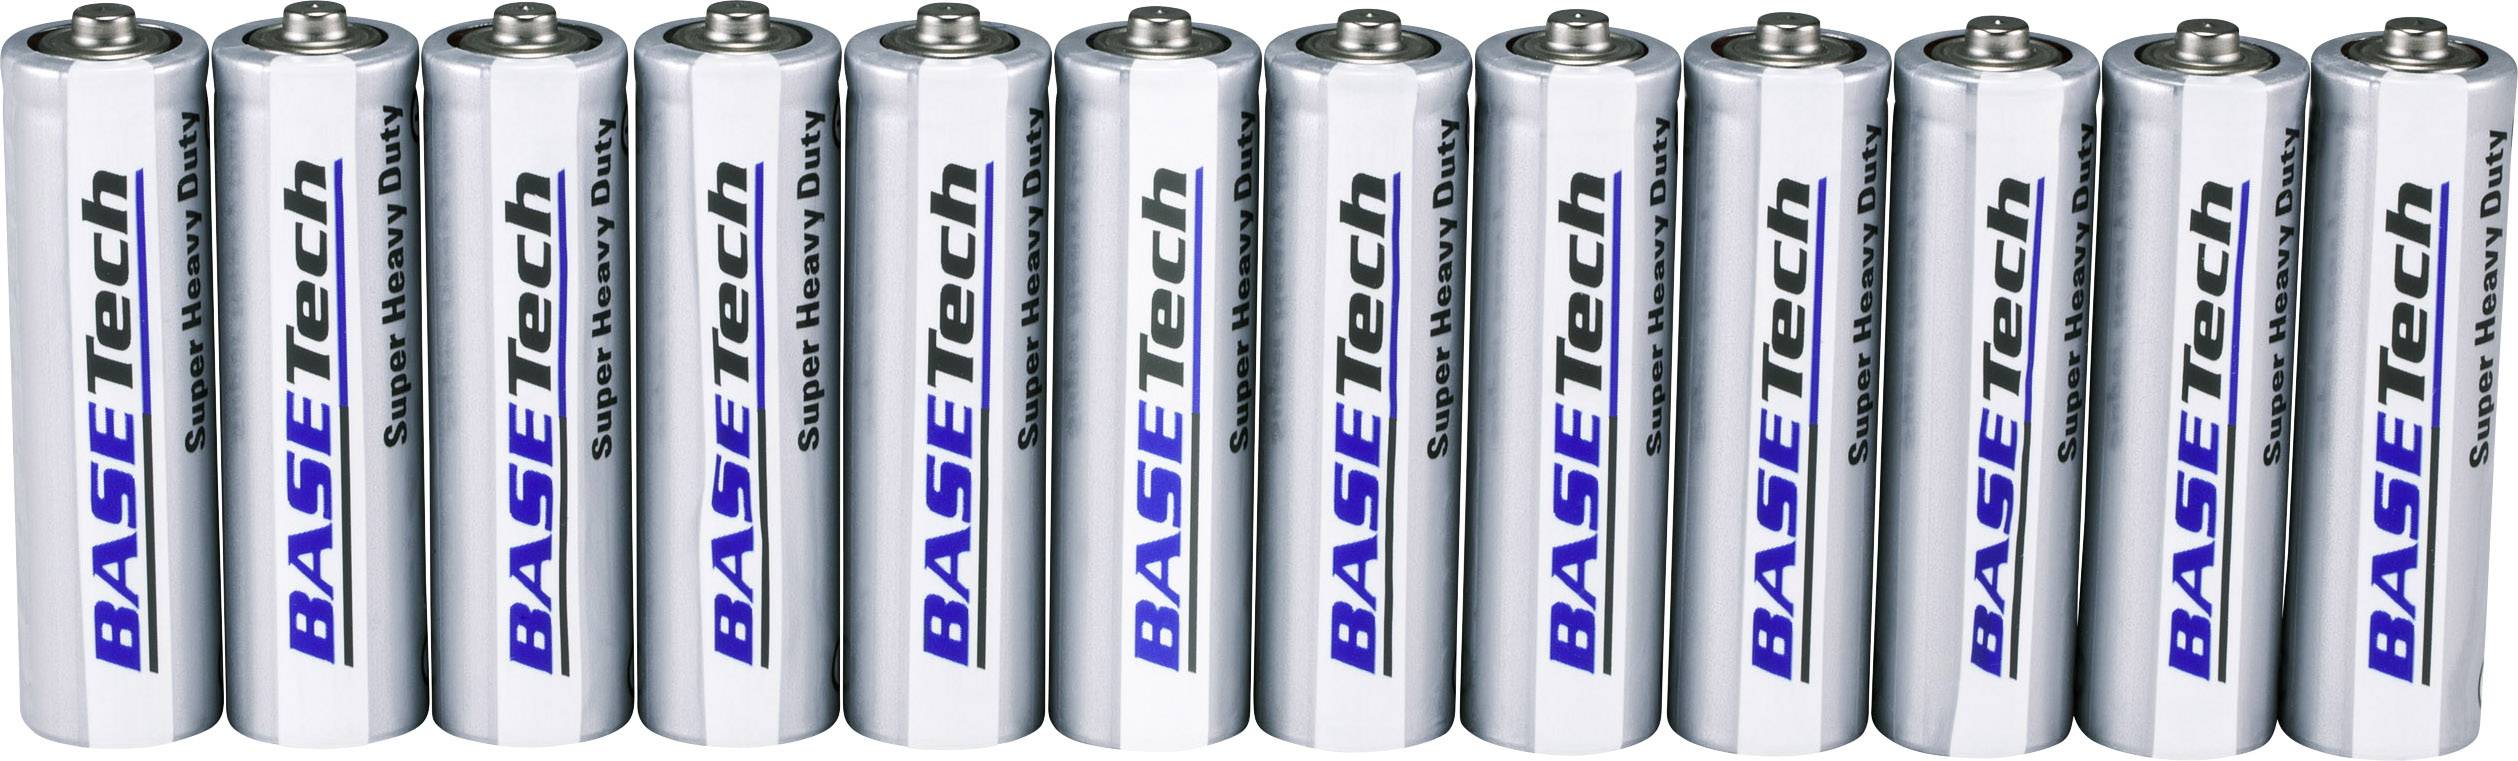 0,19€/Stk. 48x Panasonic Batterien TYP: R06 AA R06 Zink / Kohle Batterie 